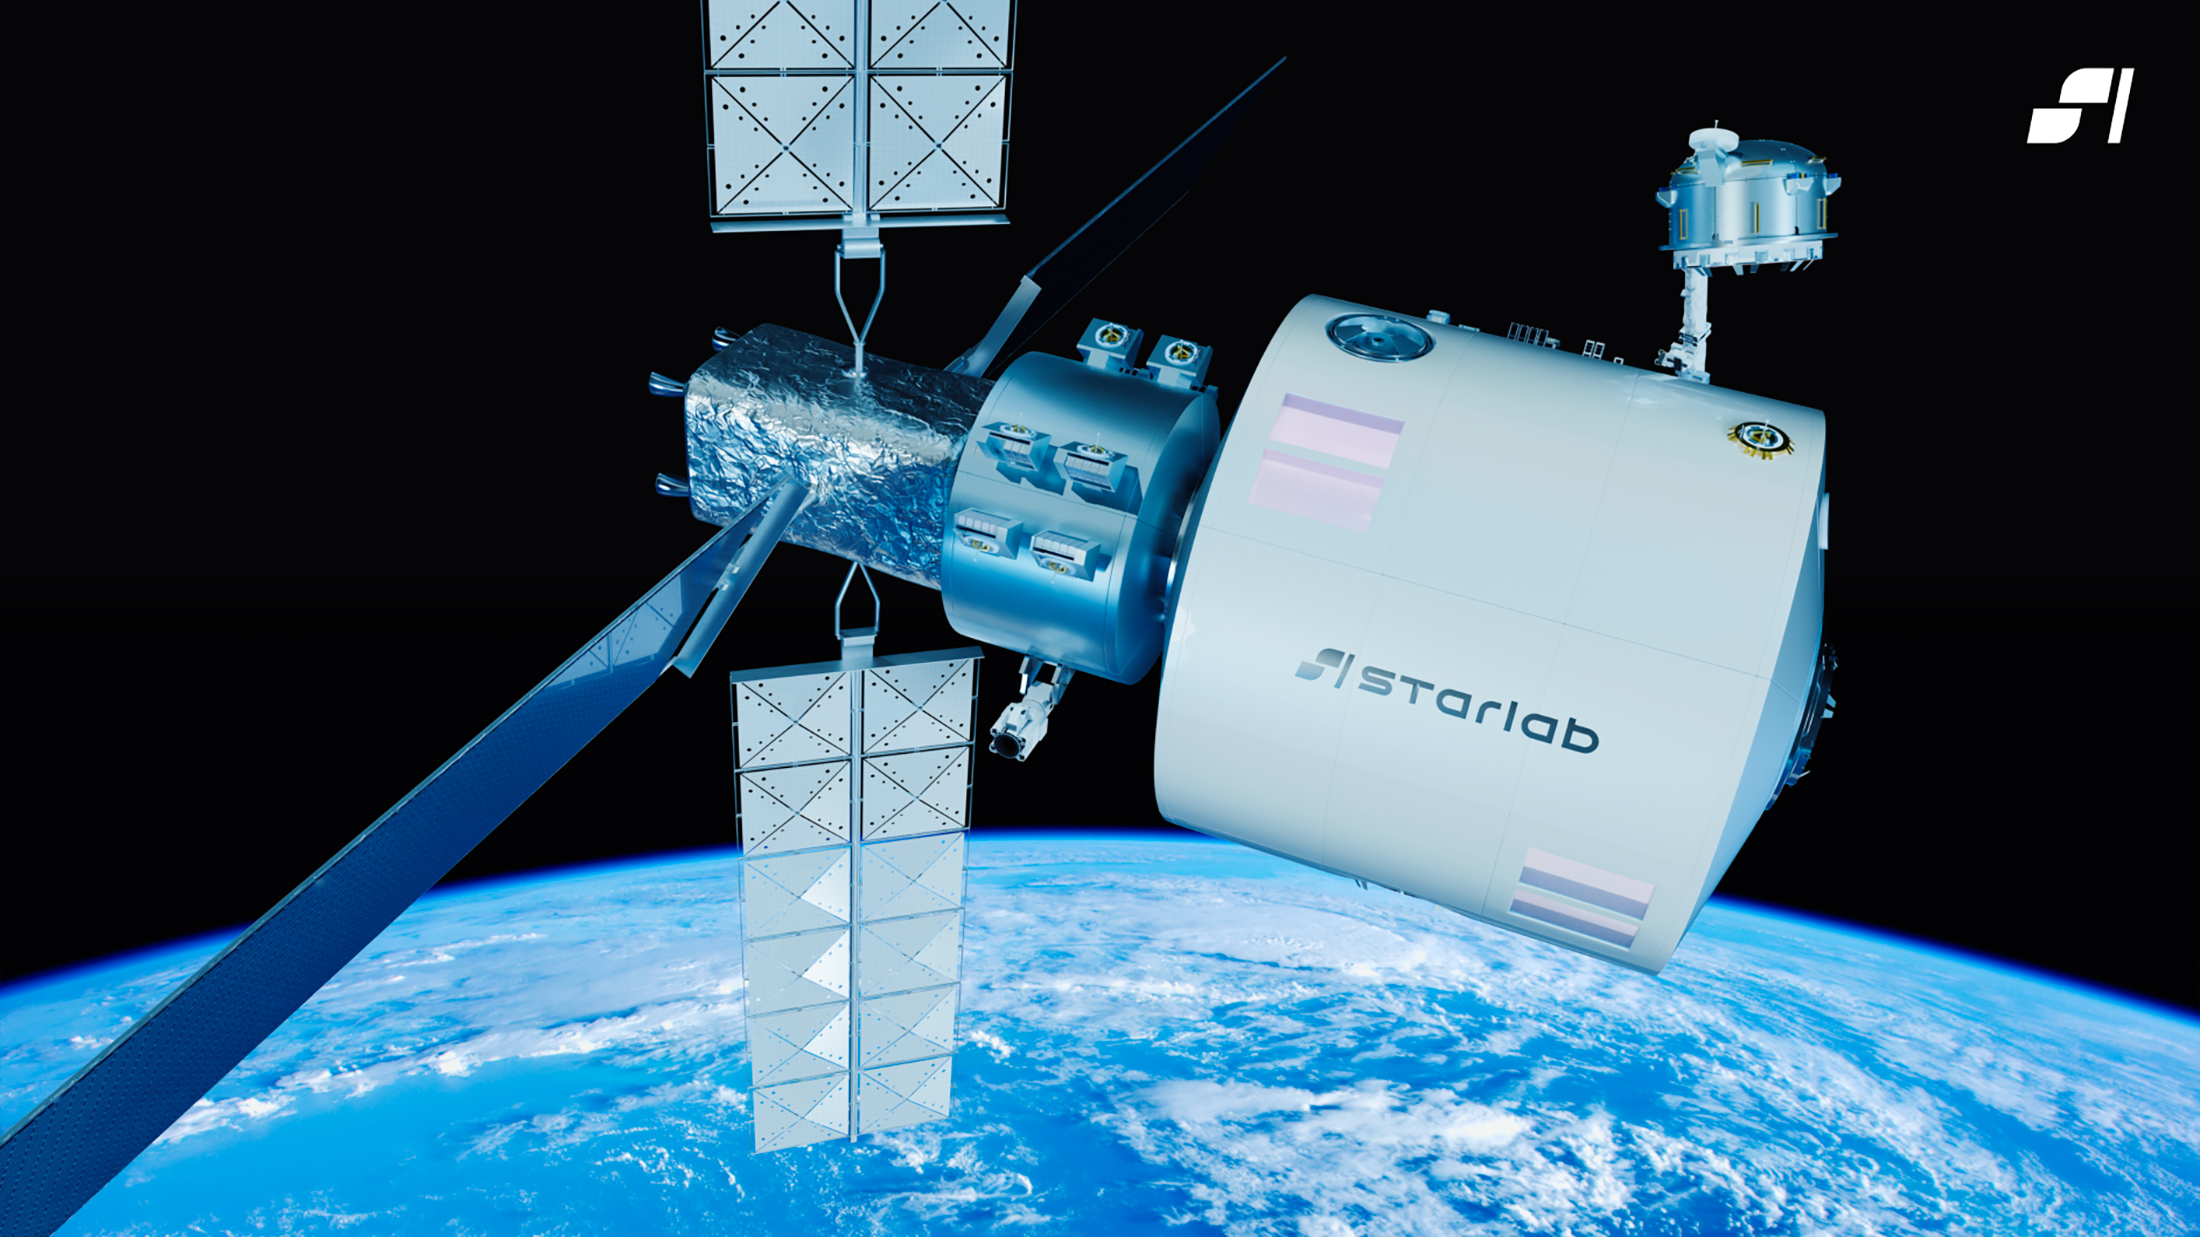 Vue d'artiste de Starlab, un concept de station spatiale que développeront et construiront Voyager Space et Airbus. © Starlab Space LLC